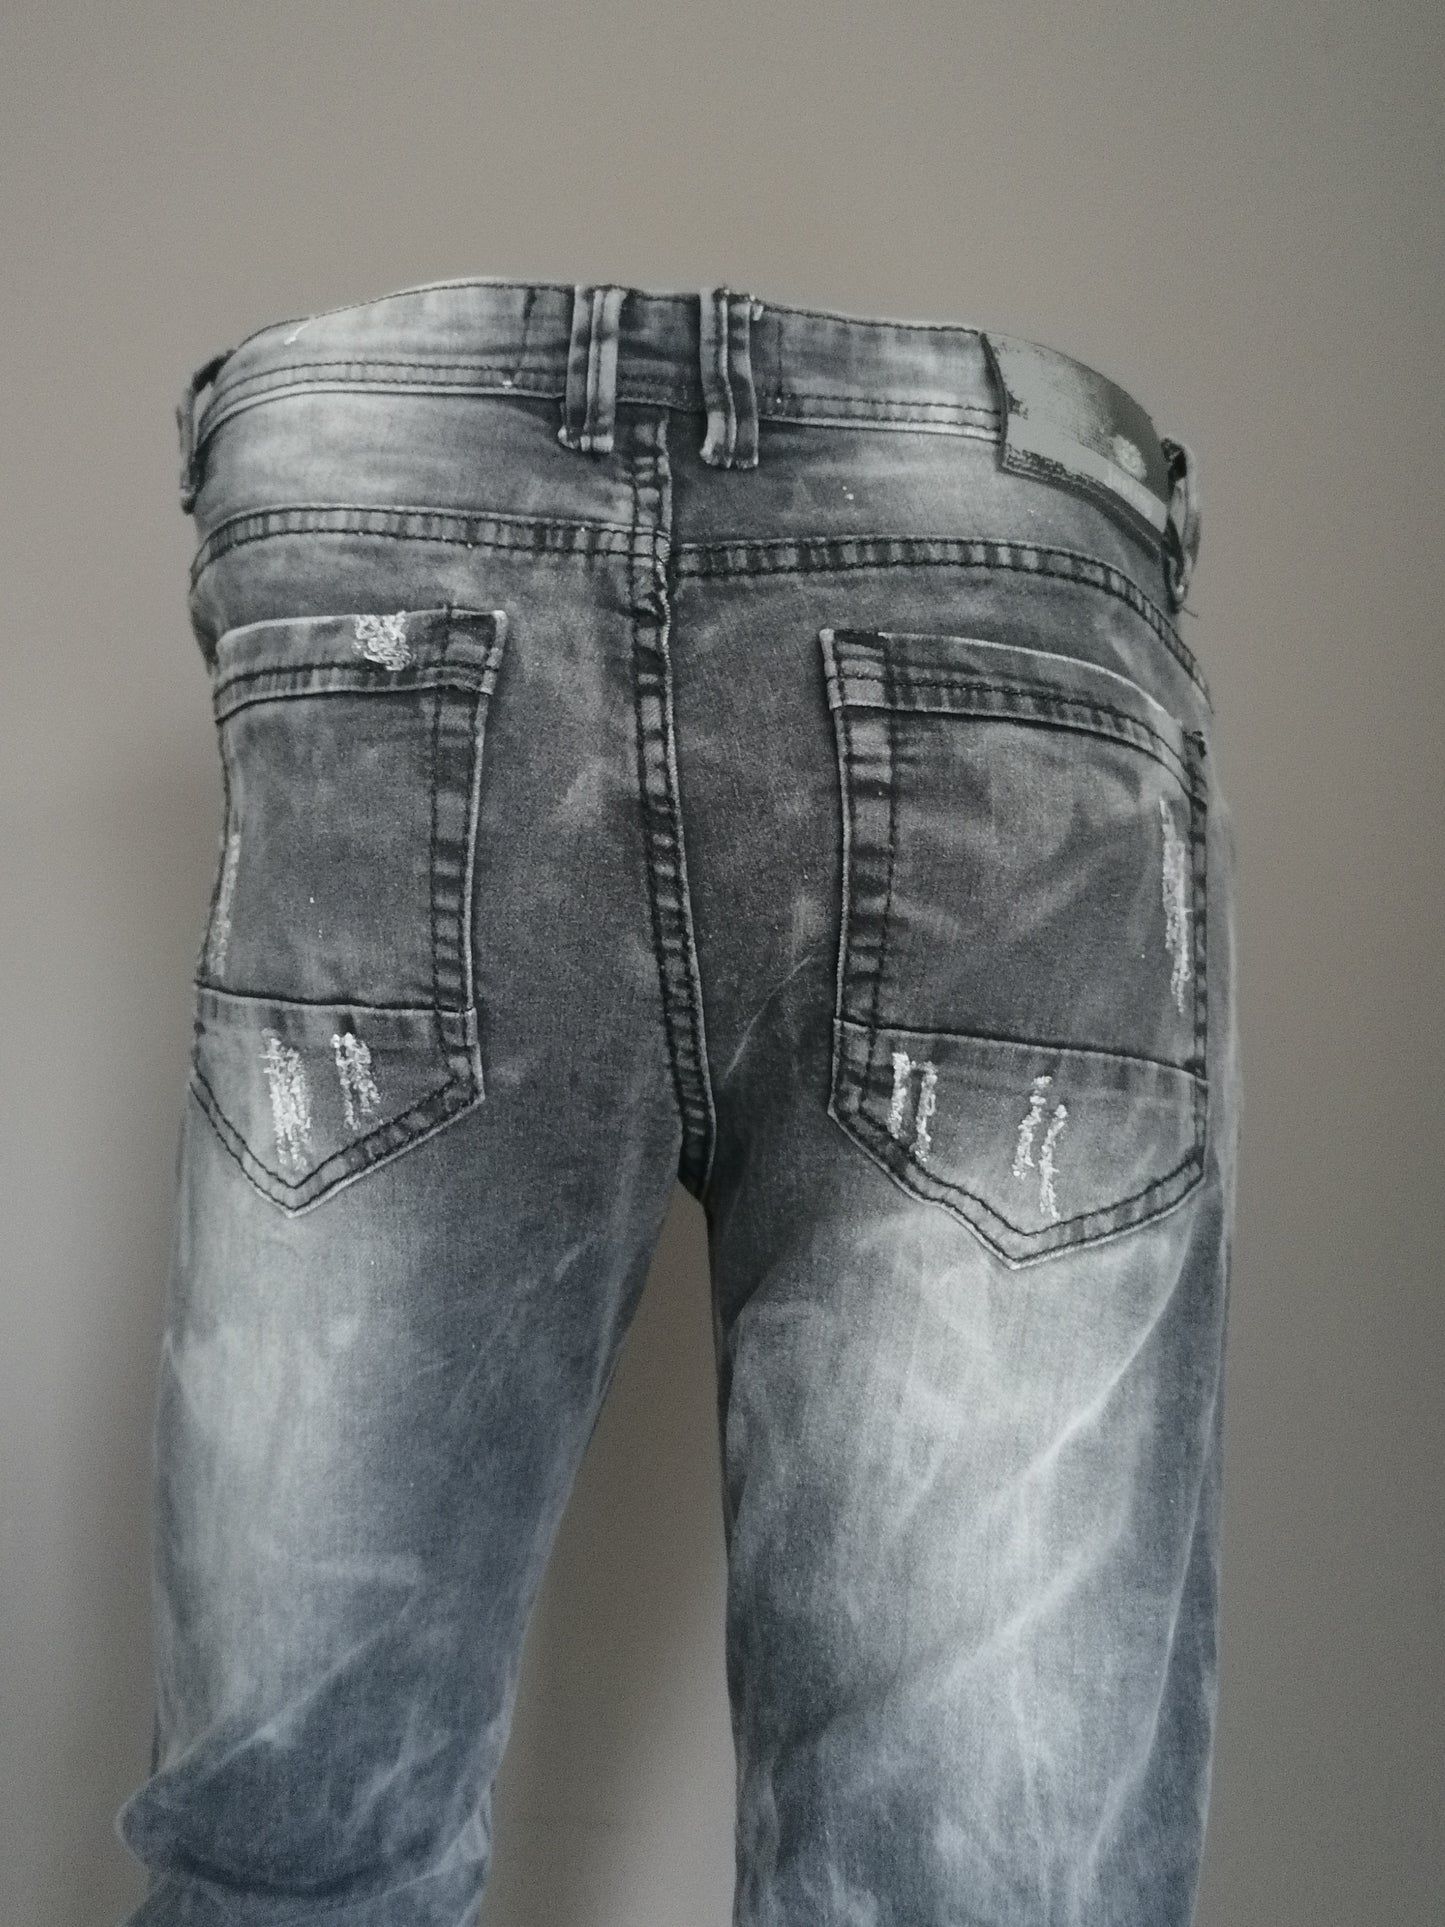 Chiare i jeans. Nero colorato. Taglia W34 - L32. stirata